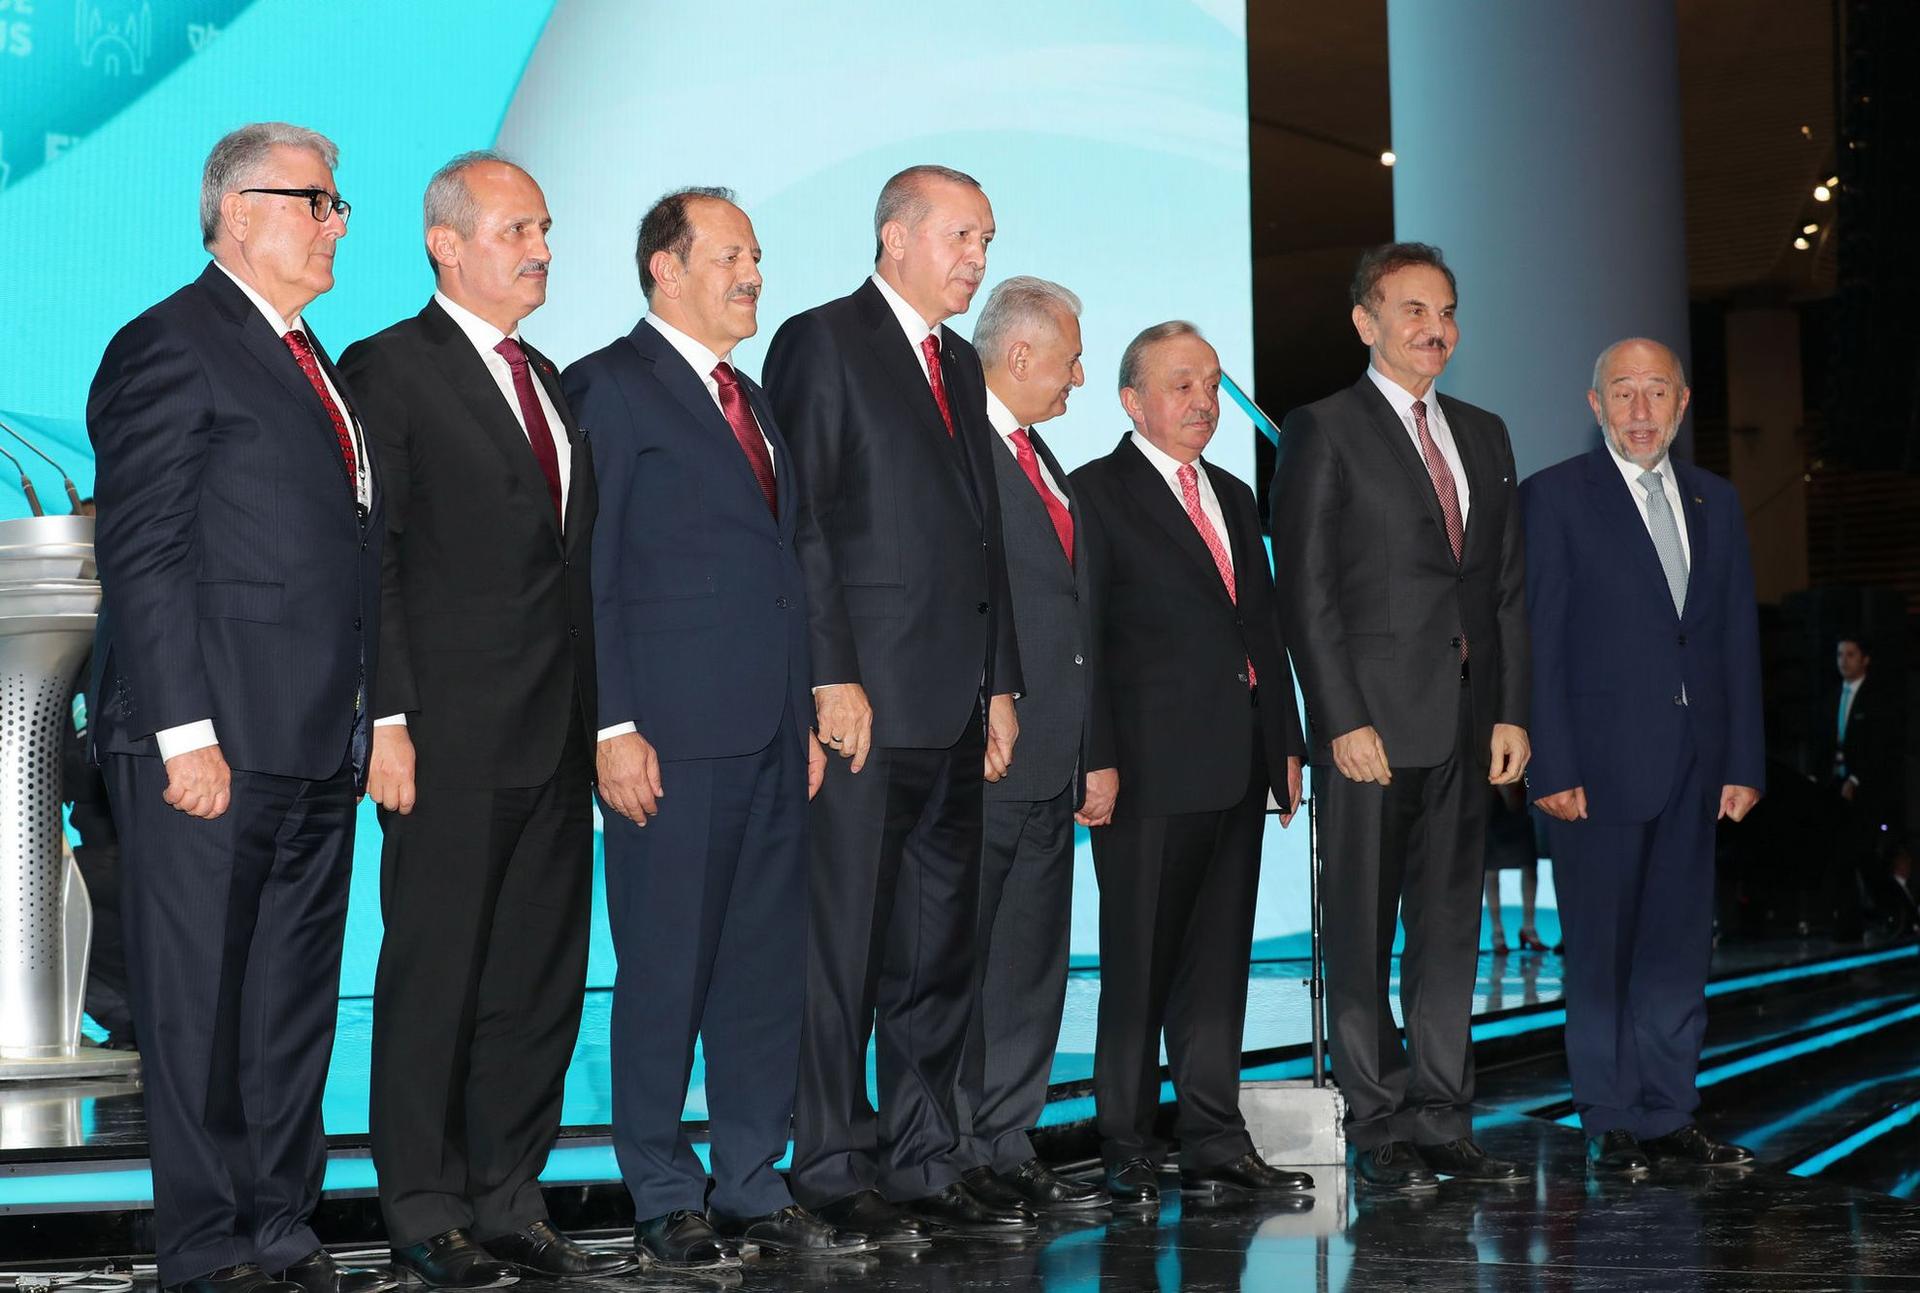 Președintele Turciei, Recep Tayyip Erdoğan, alături de conducătorii celor mai mari companii de construcții din Turcia, la inaugurarea Aeroportului Internațional din Istanbul. Printre aceștia se numără: președintele MAPA, Mehmet Nafız Günal (al 2-lea din dreapta), președintele LİMAK Nihat Özdemir (dreapta), președintele CENGİZ İnșaat Mehmet Cengiz (3 dreapta), președintele KALYON Cemal Kalyoncu (3 stânga) și președintele KOLİN Naci Koloğlu (stânga). Foto: Cem Öksüz - Anadolu Agency